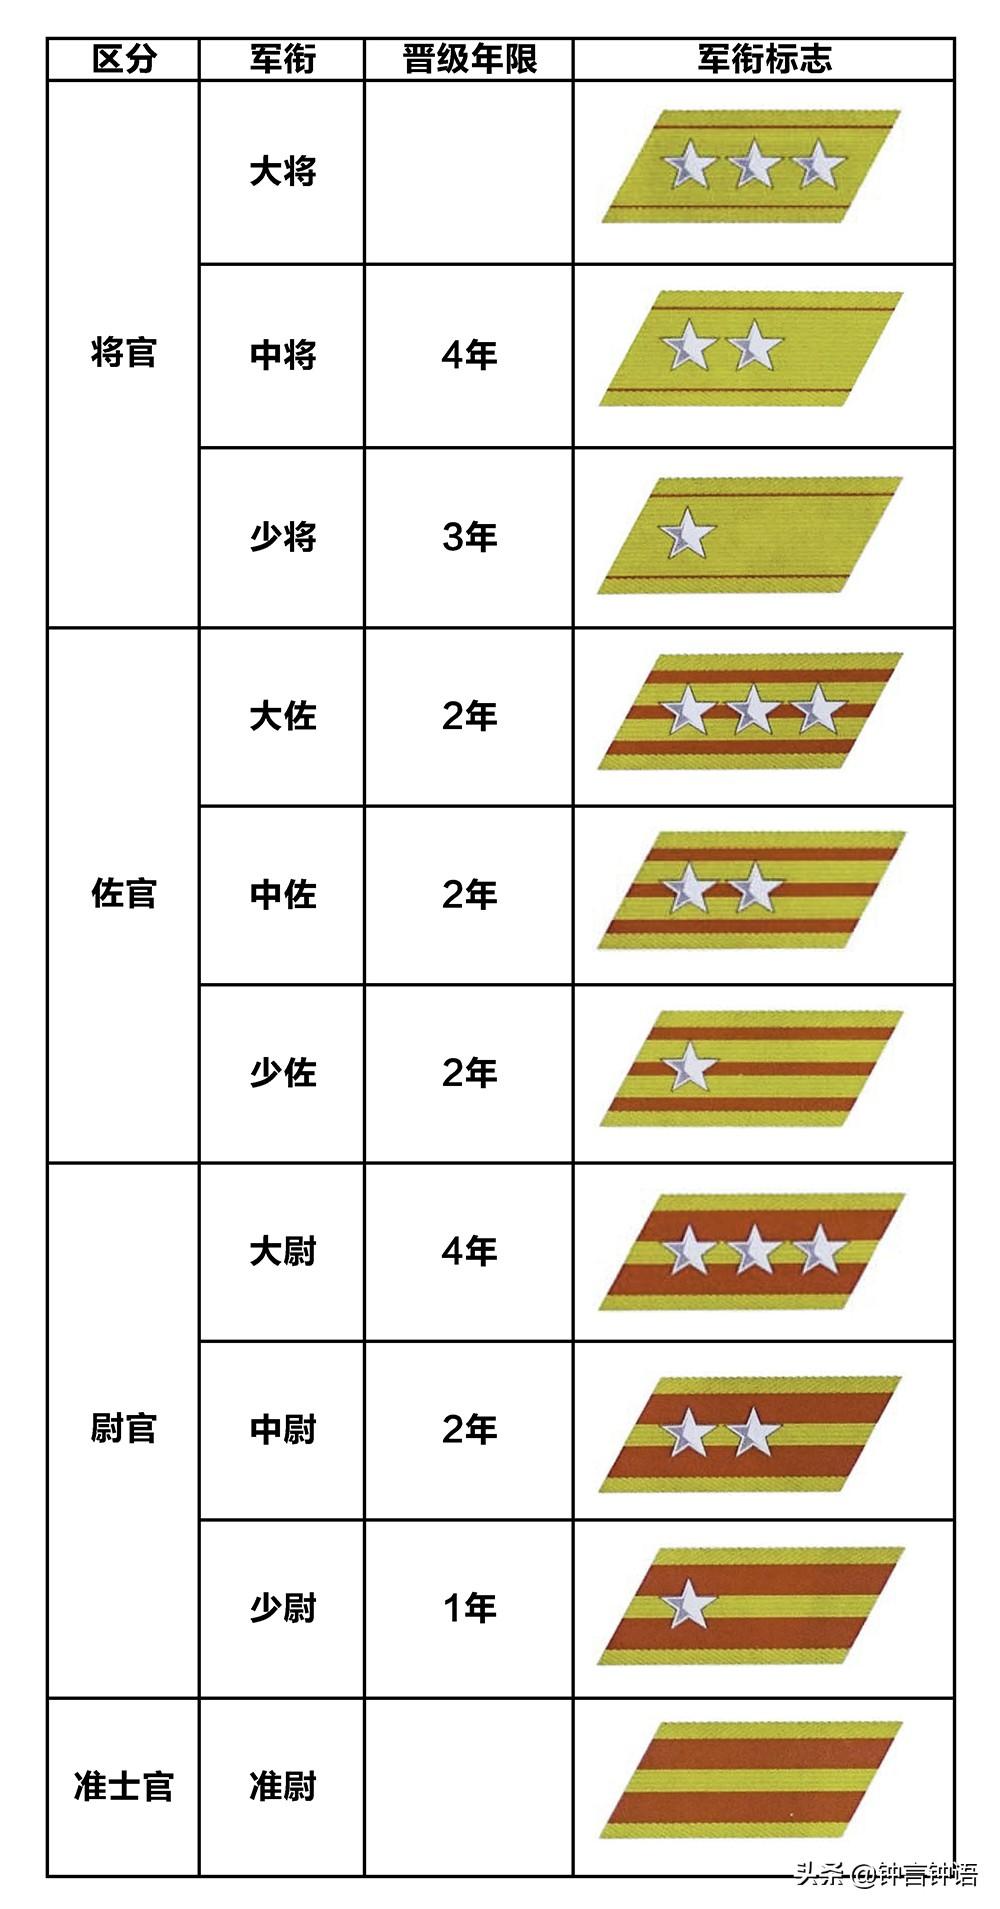 图说侵华日军陆军的单兵装备：军衔及标志